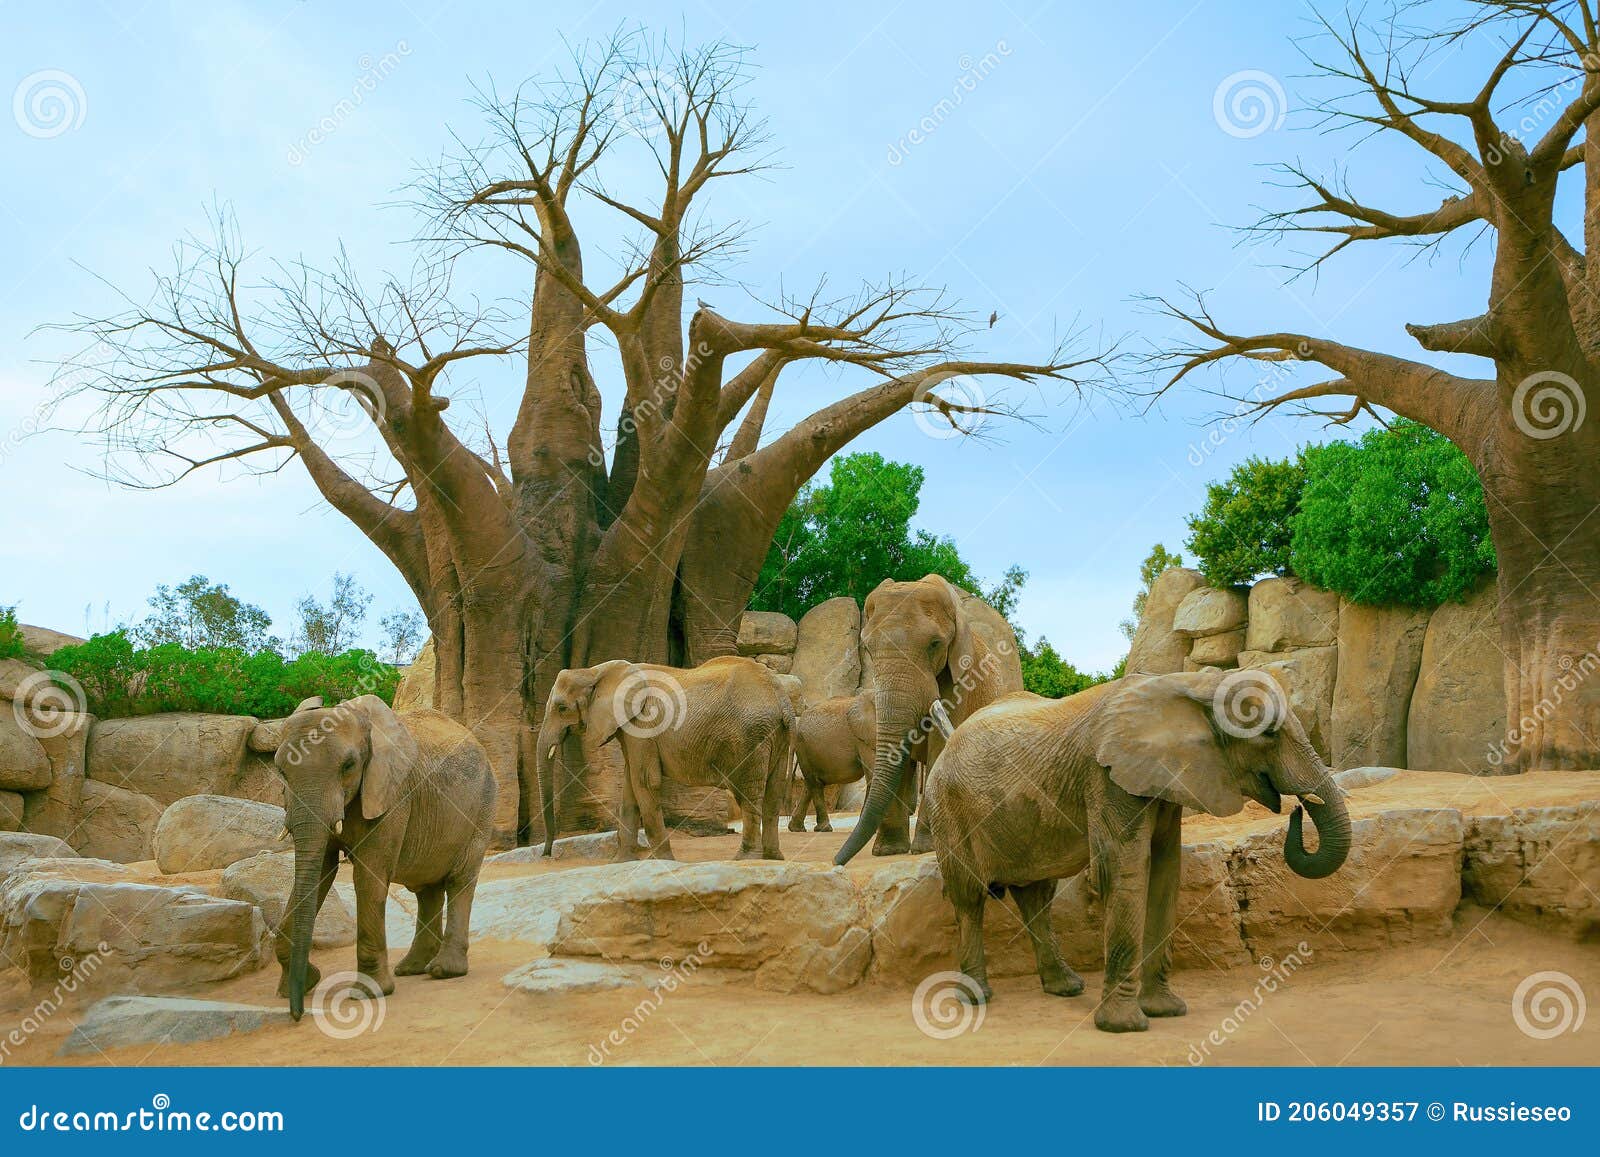 elephants and baobabs